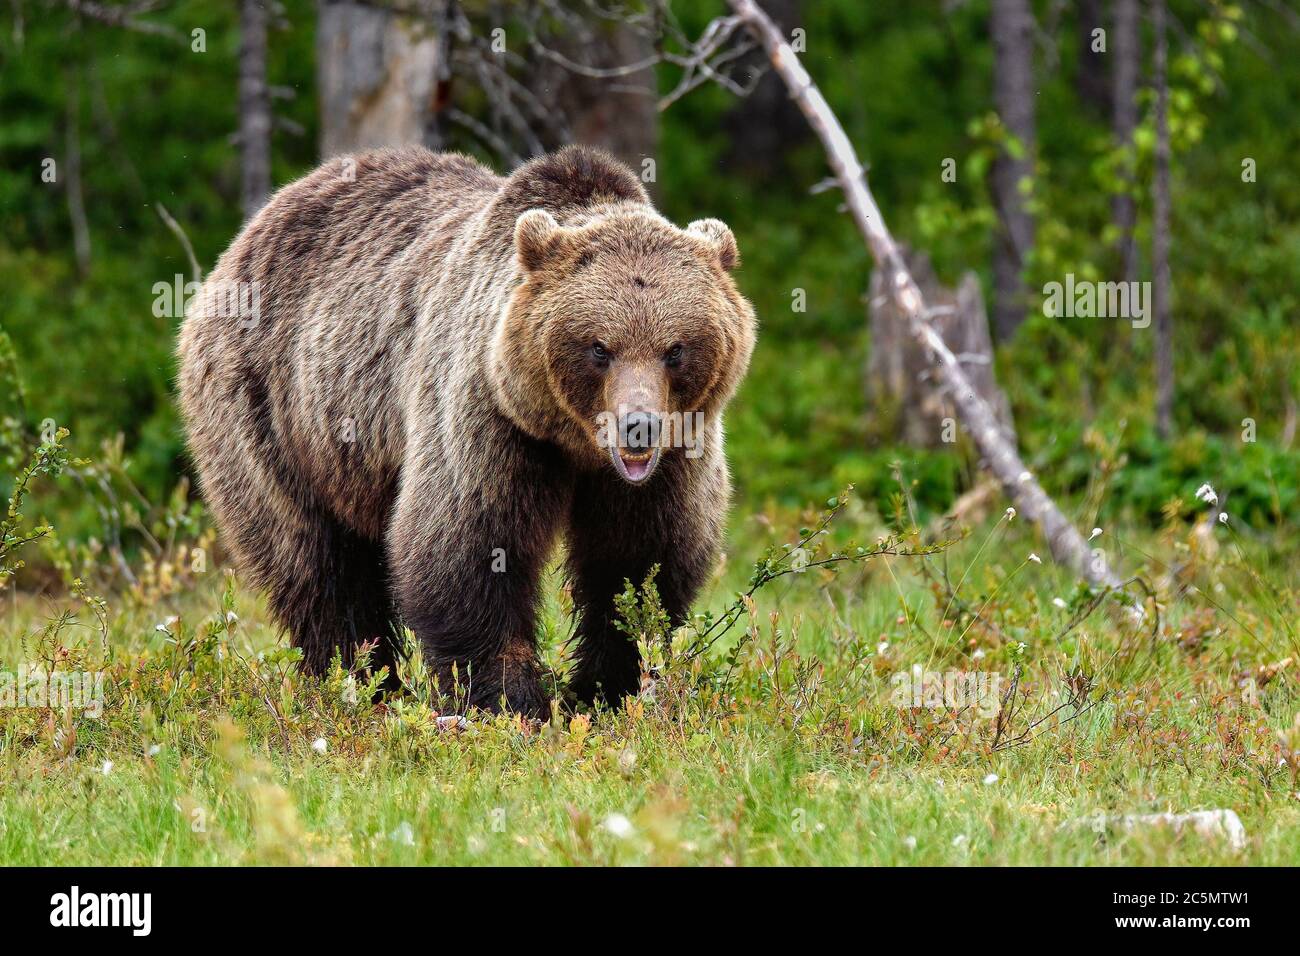 Ours brun a l'air un peu agressif mais est seulement communiquer à ses collègues porte qu'il est "sur le haut de la hiérarchie". Banque D'Images